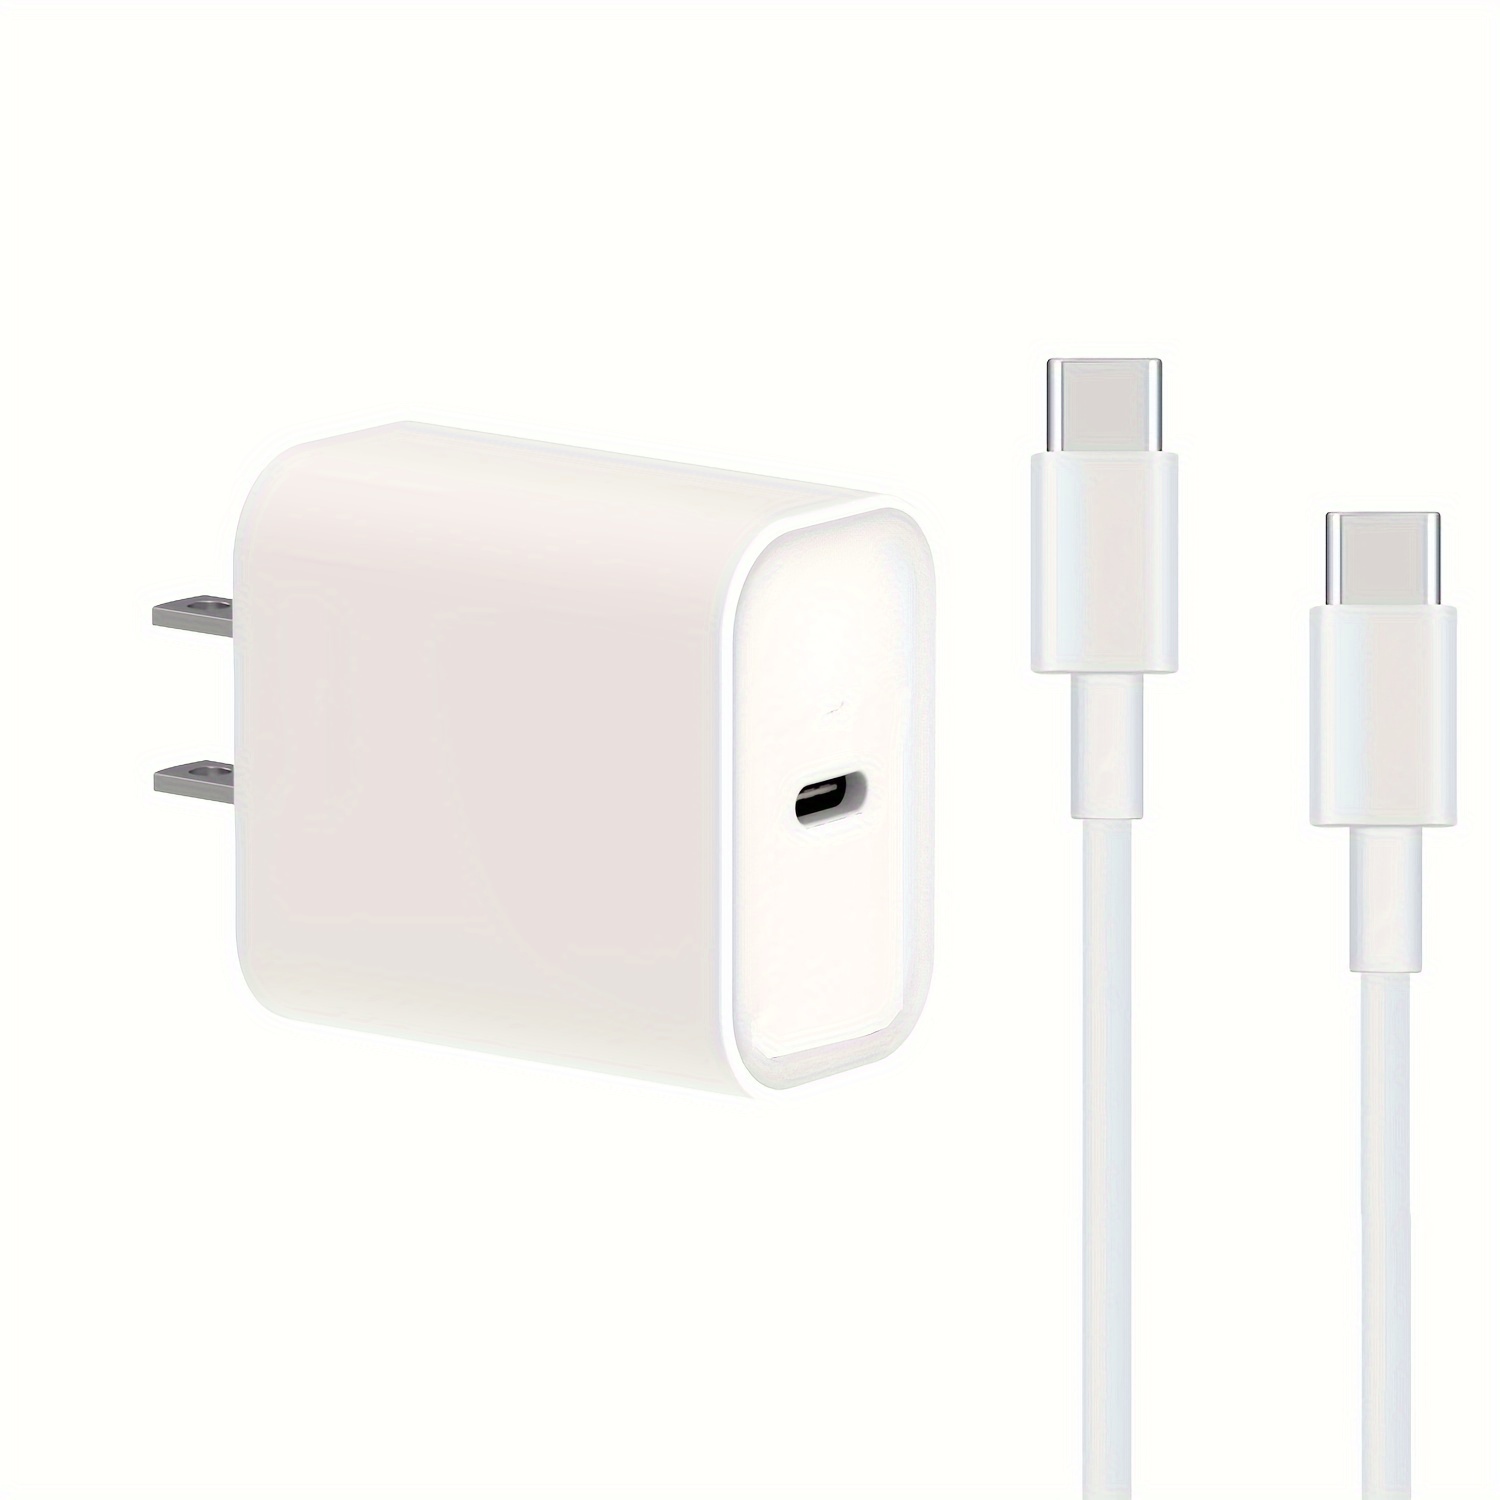  Cargador rápido para iPhone de 20 W [certificado Apple MFi] USB  tipo C, bloque de carga rápida, suministro de energía, cargador rápido  Apple con cable Lightning de 3.3 pies para iPhone